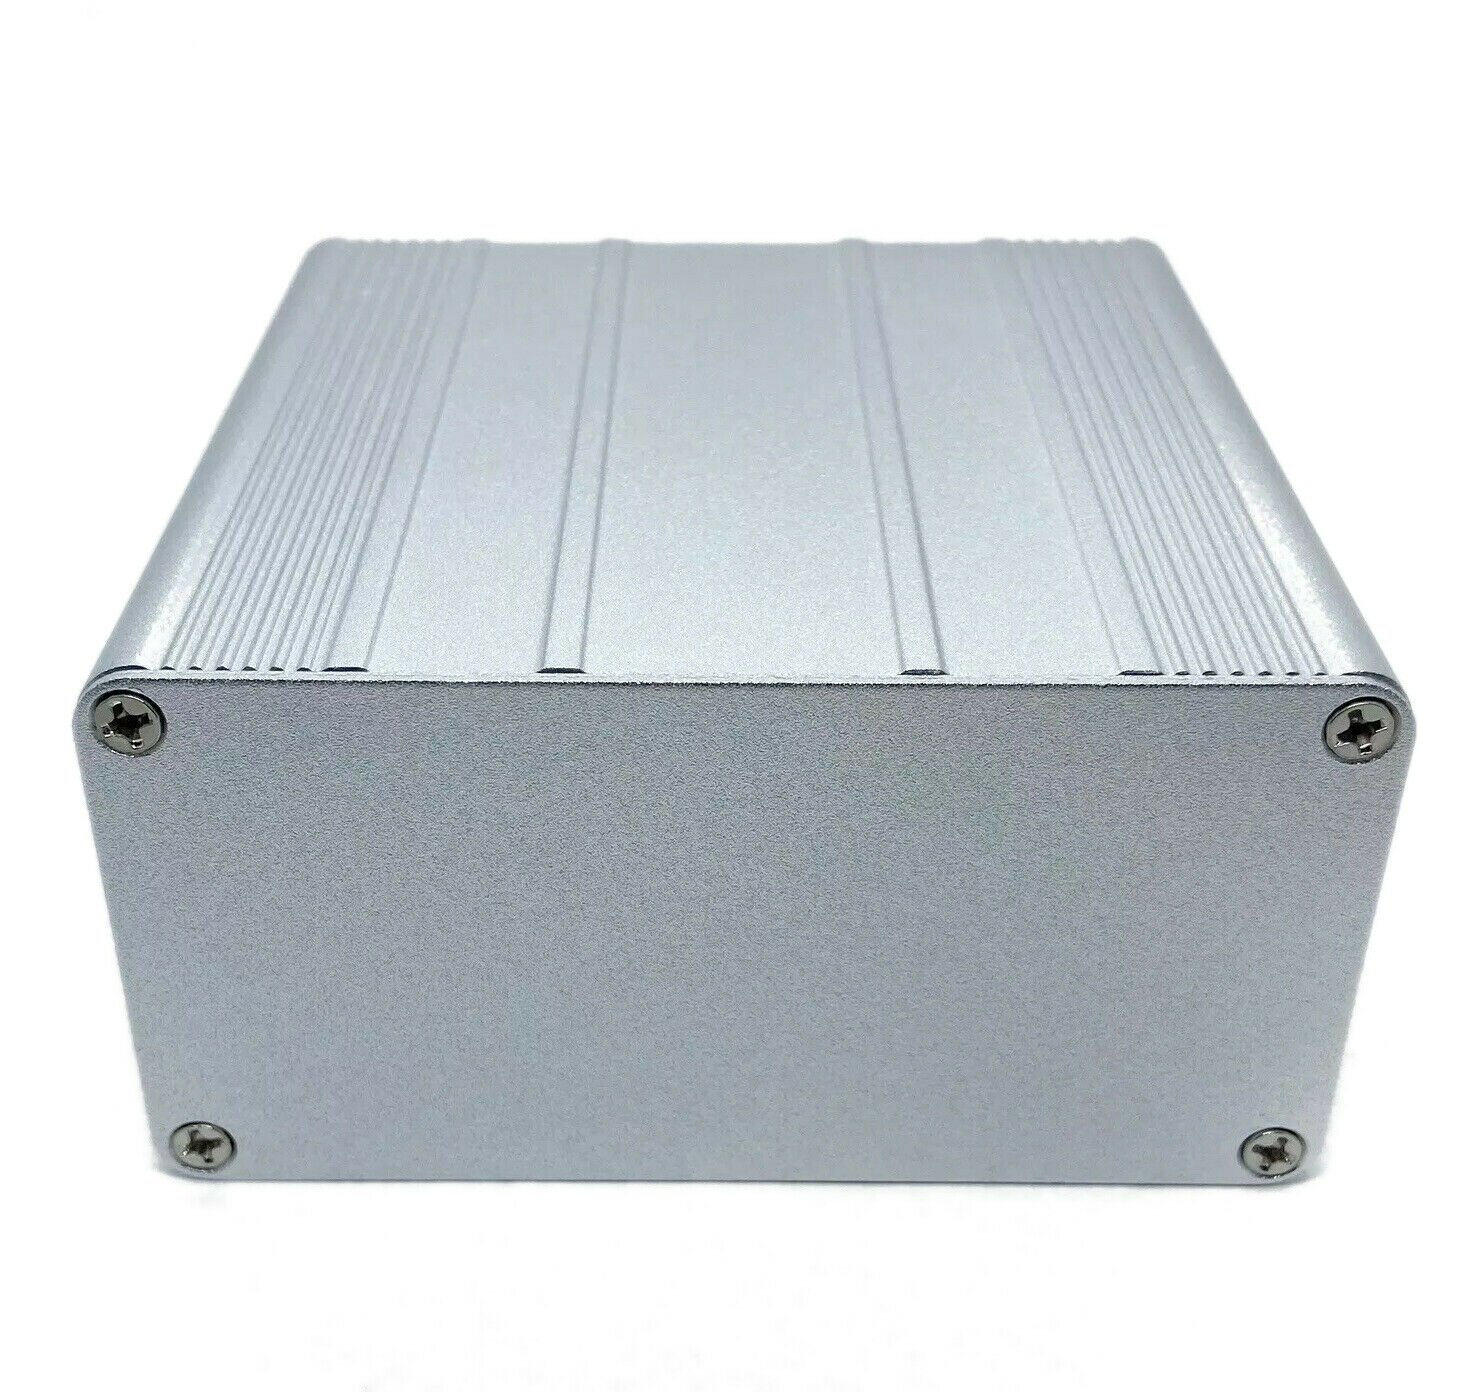 Silver Aluminum Pcb Instrument Box Enclosure Diy 3.94"x3.94"x1.97" 100x100x50mm